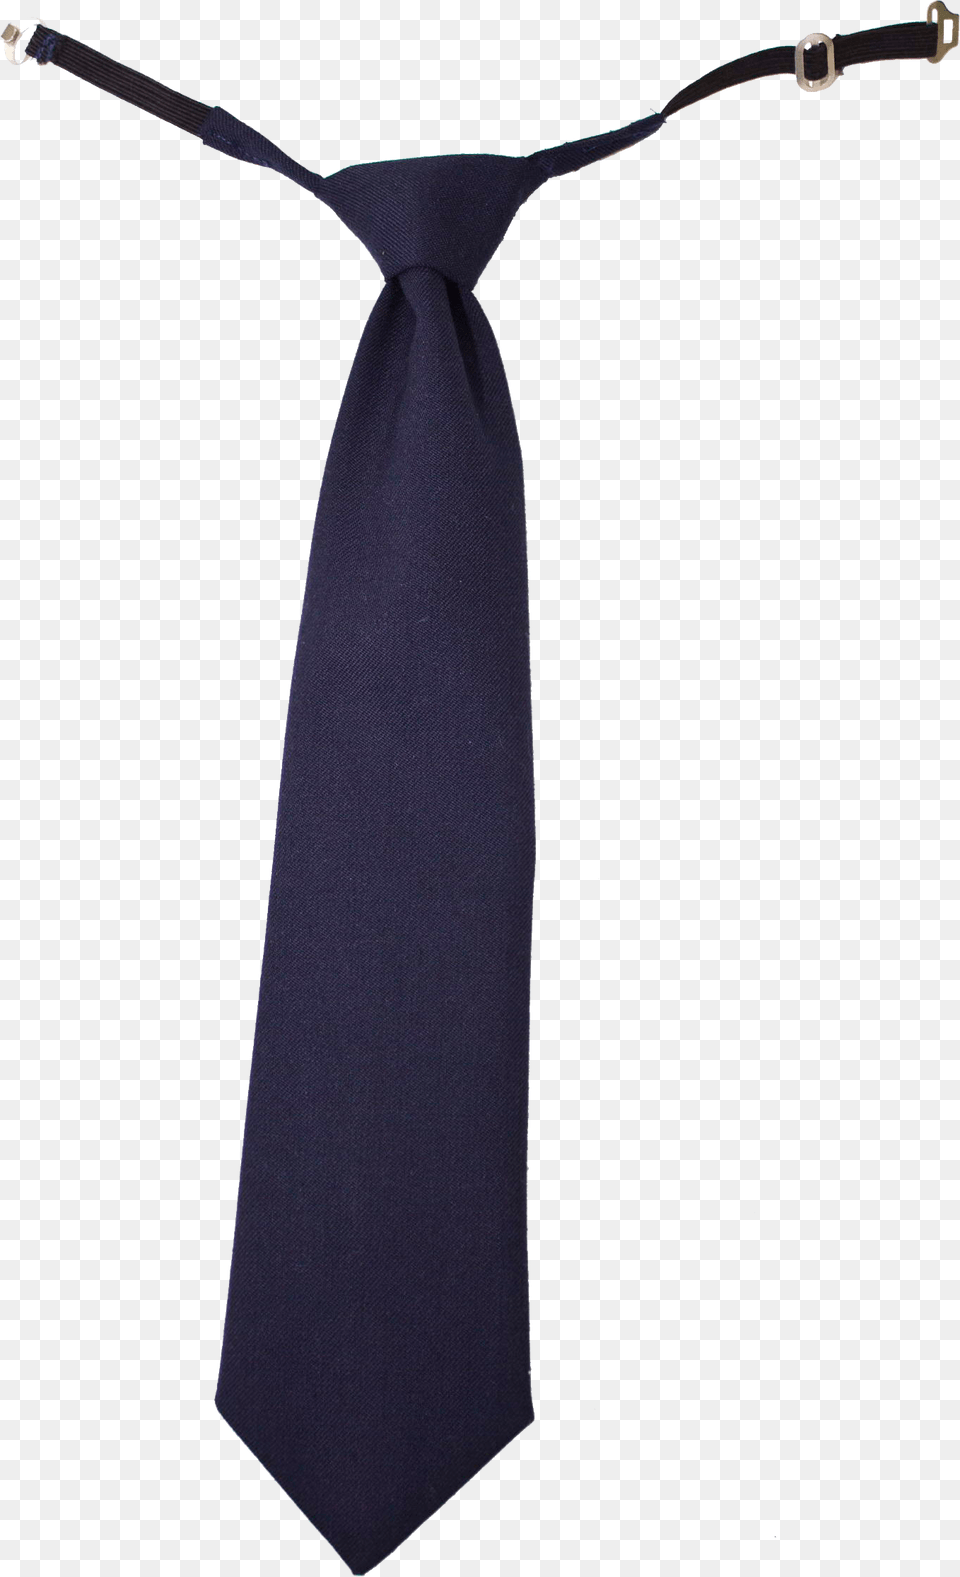 Tie Tie, Accessories, Formal Wear, Necktie, Blade Free Png